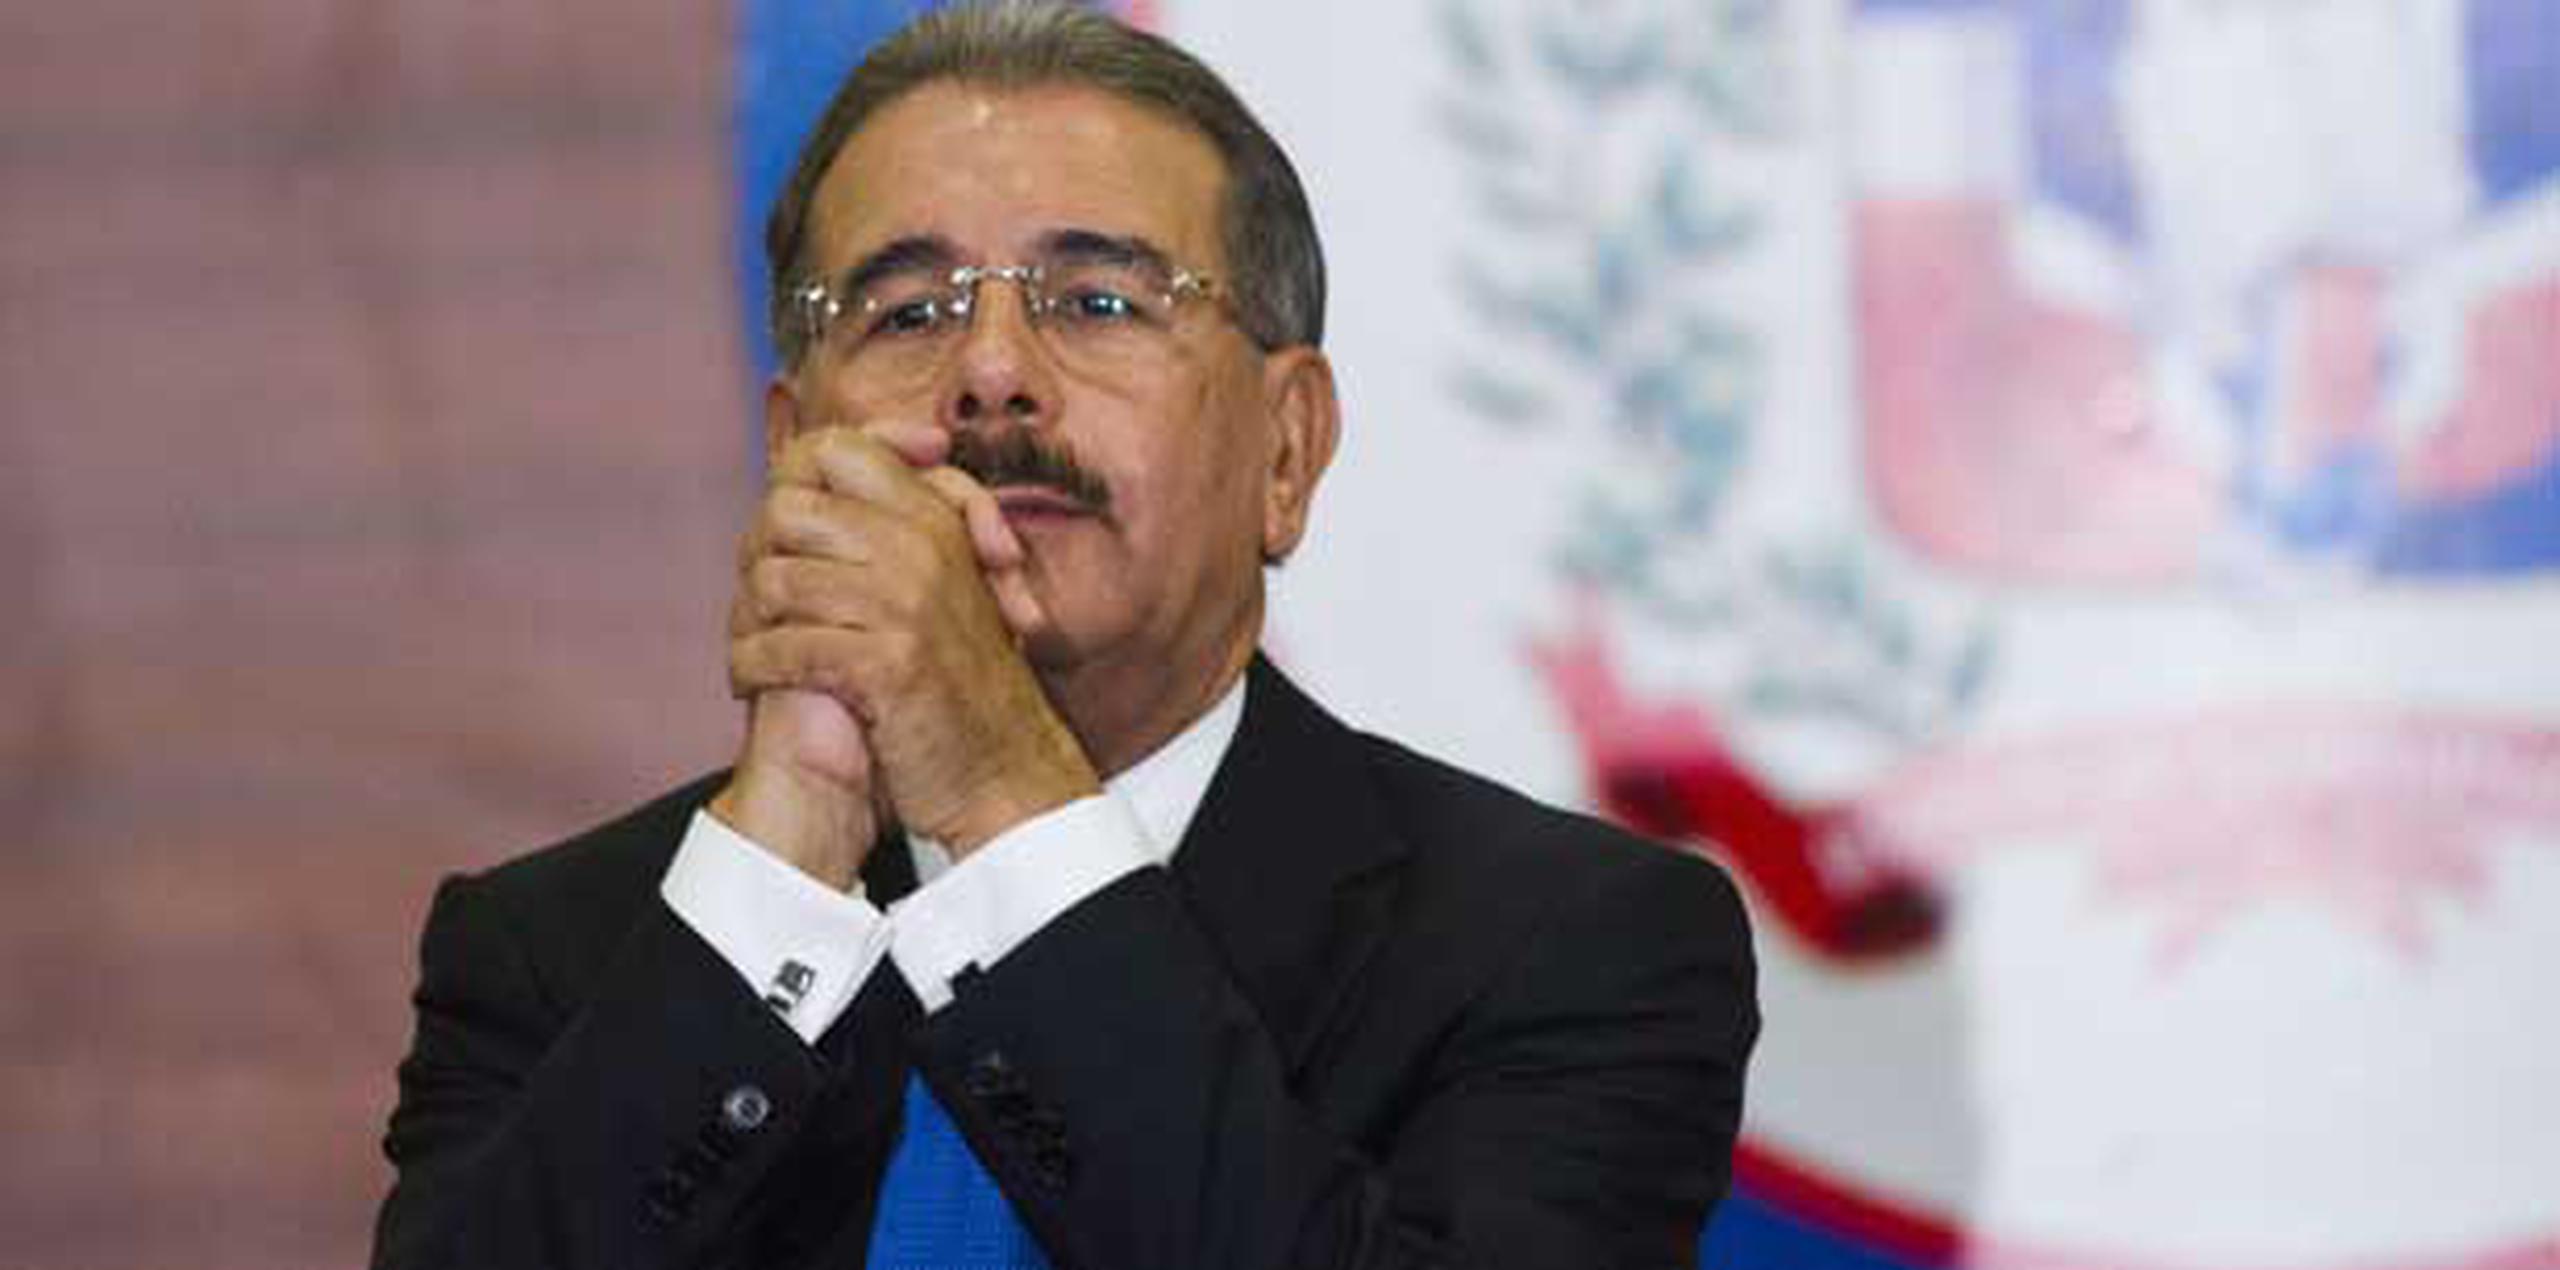 El presidente Danilo Medina ha prometido invertir 4% del PIB en educación, más que gobiernos previos en el país de 9 millones de habitantes. (AFP / Archivo/ Erika Santelices)